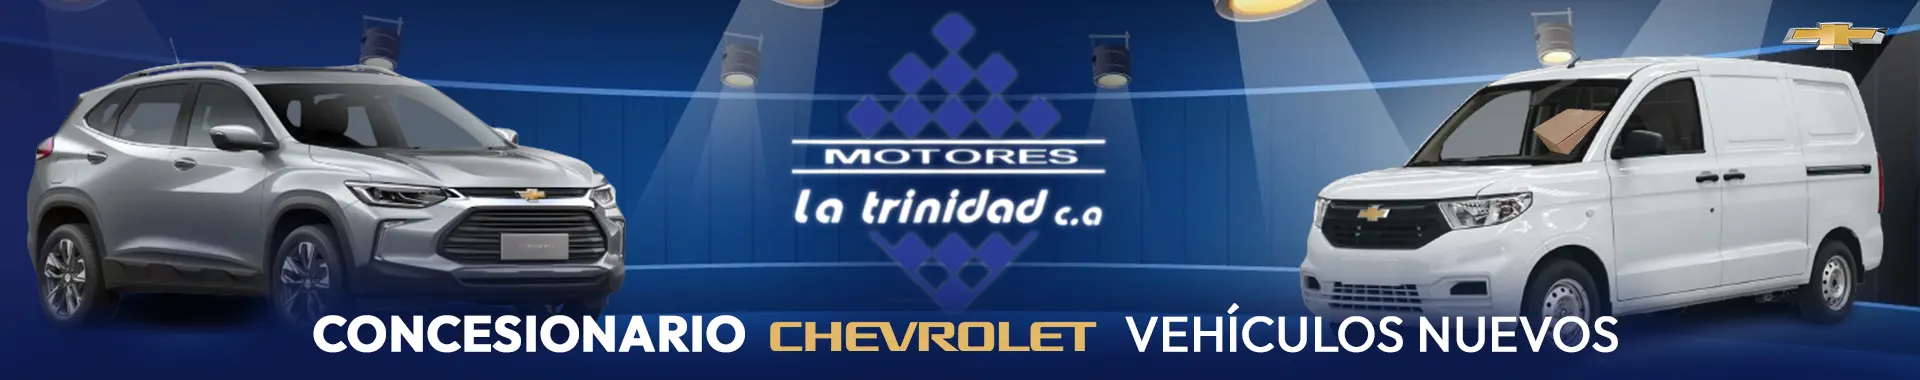 Imagen 3 del perfil de Motores La Trinidad - Autos